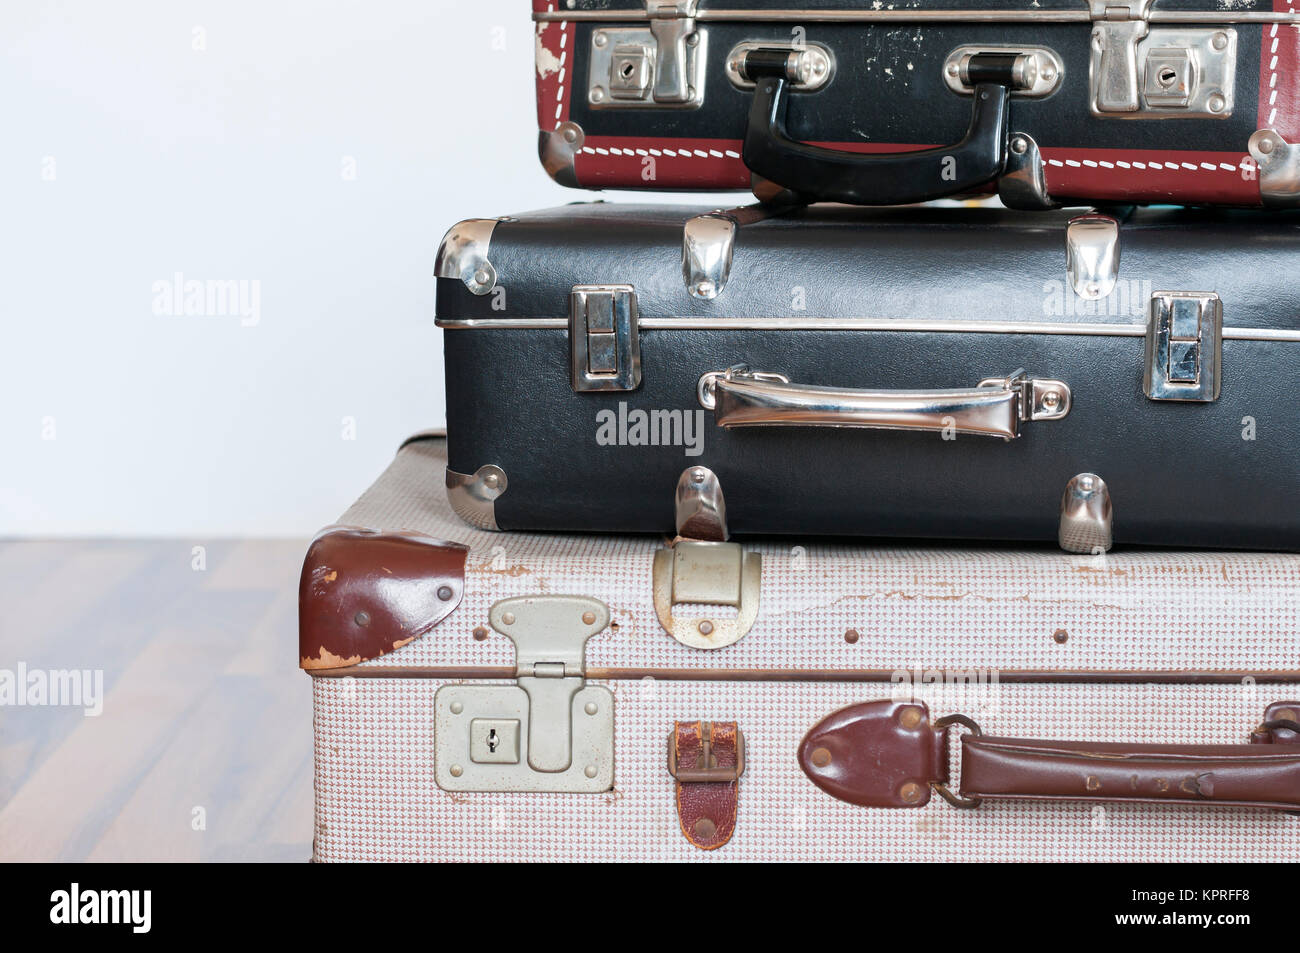 Reise Hintergrund, ein Stapel alter Koffer mit Textfreiraum. Stock Photo